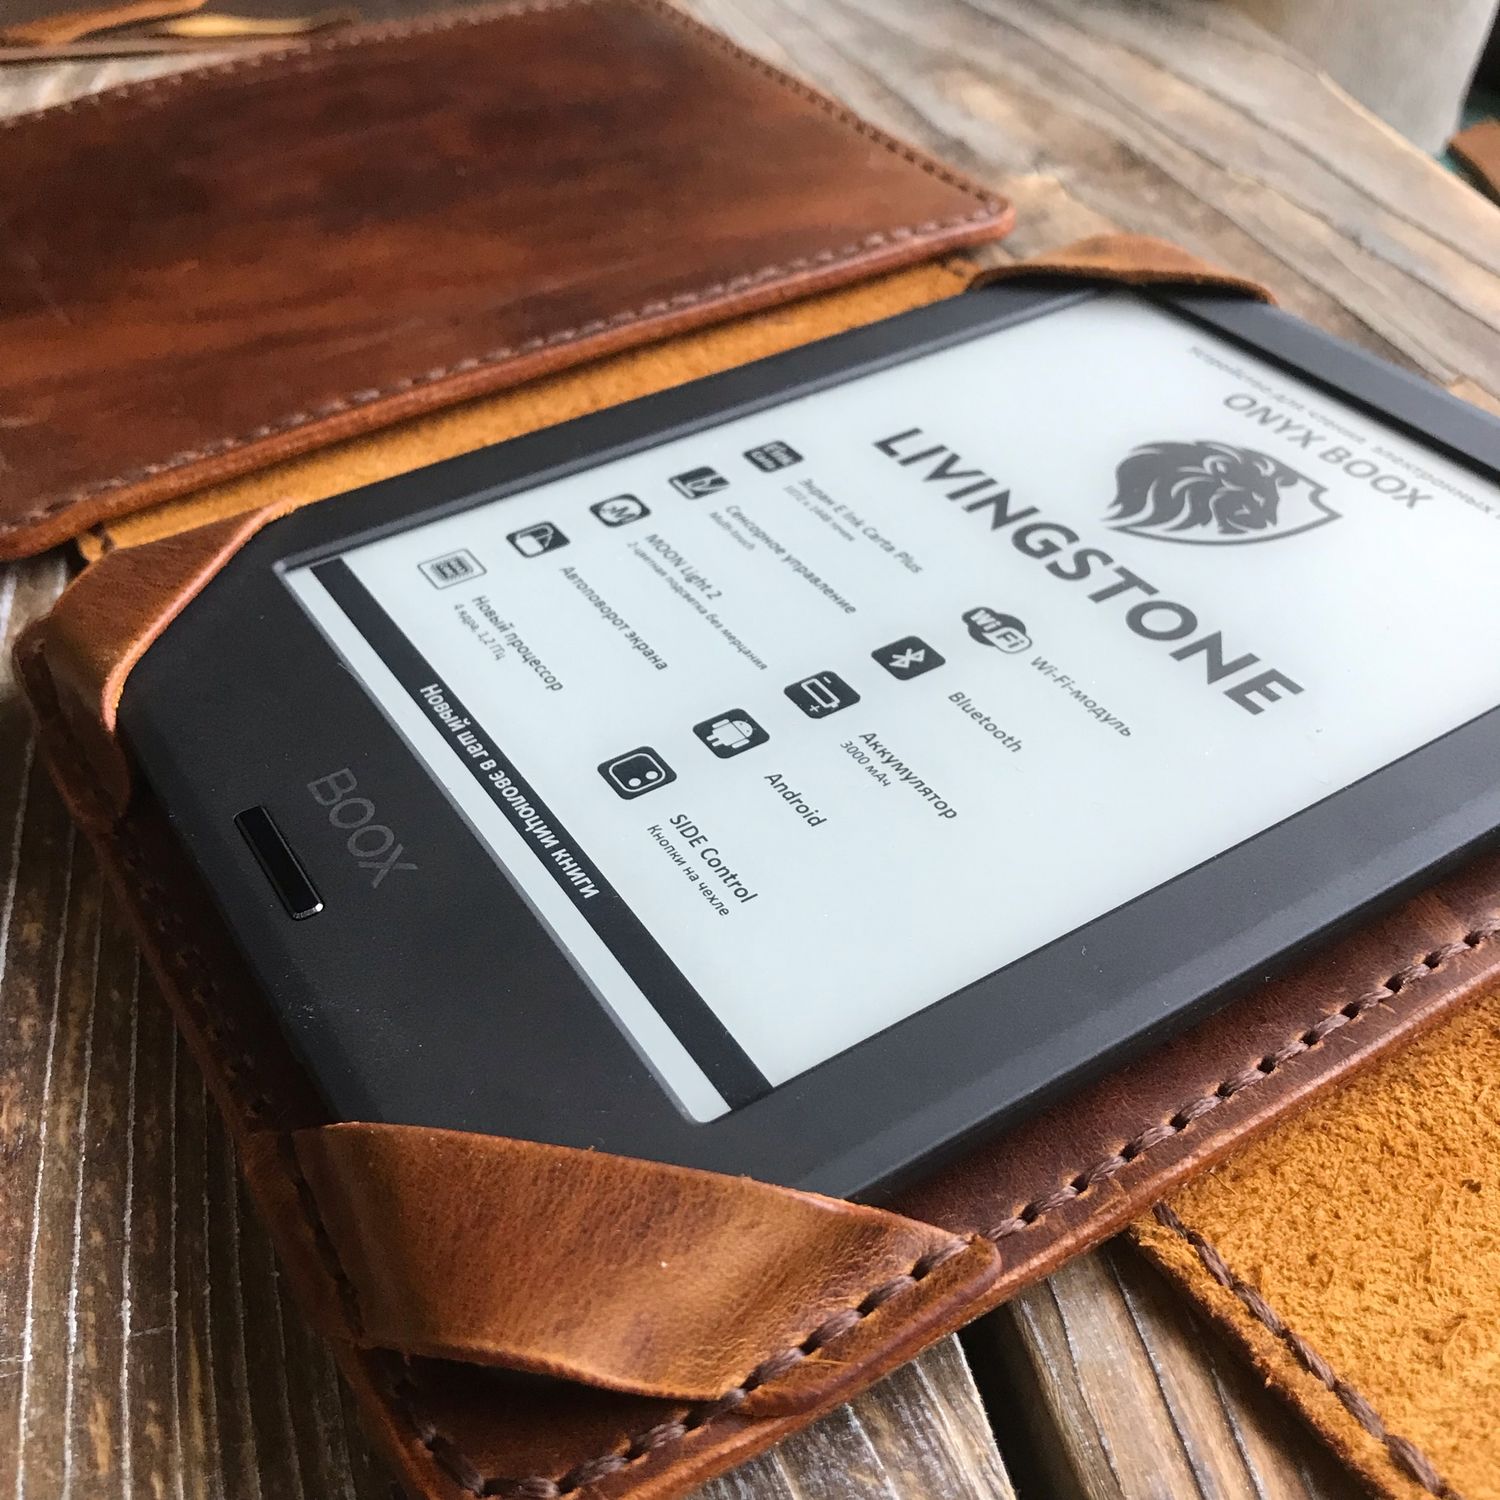 Обзор PocketBook самый недорогой ридер с подсветкой от лидера рынка / Хабр